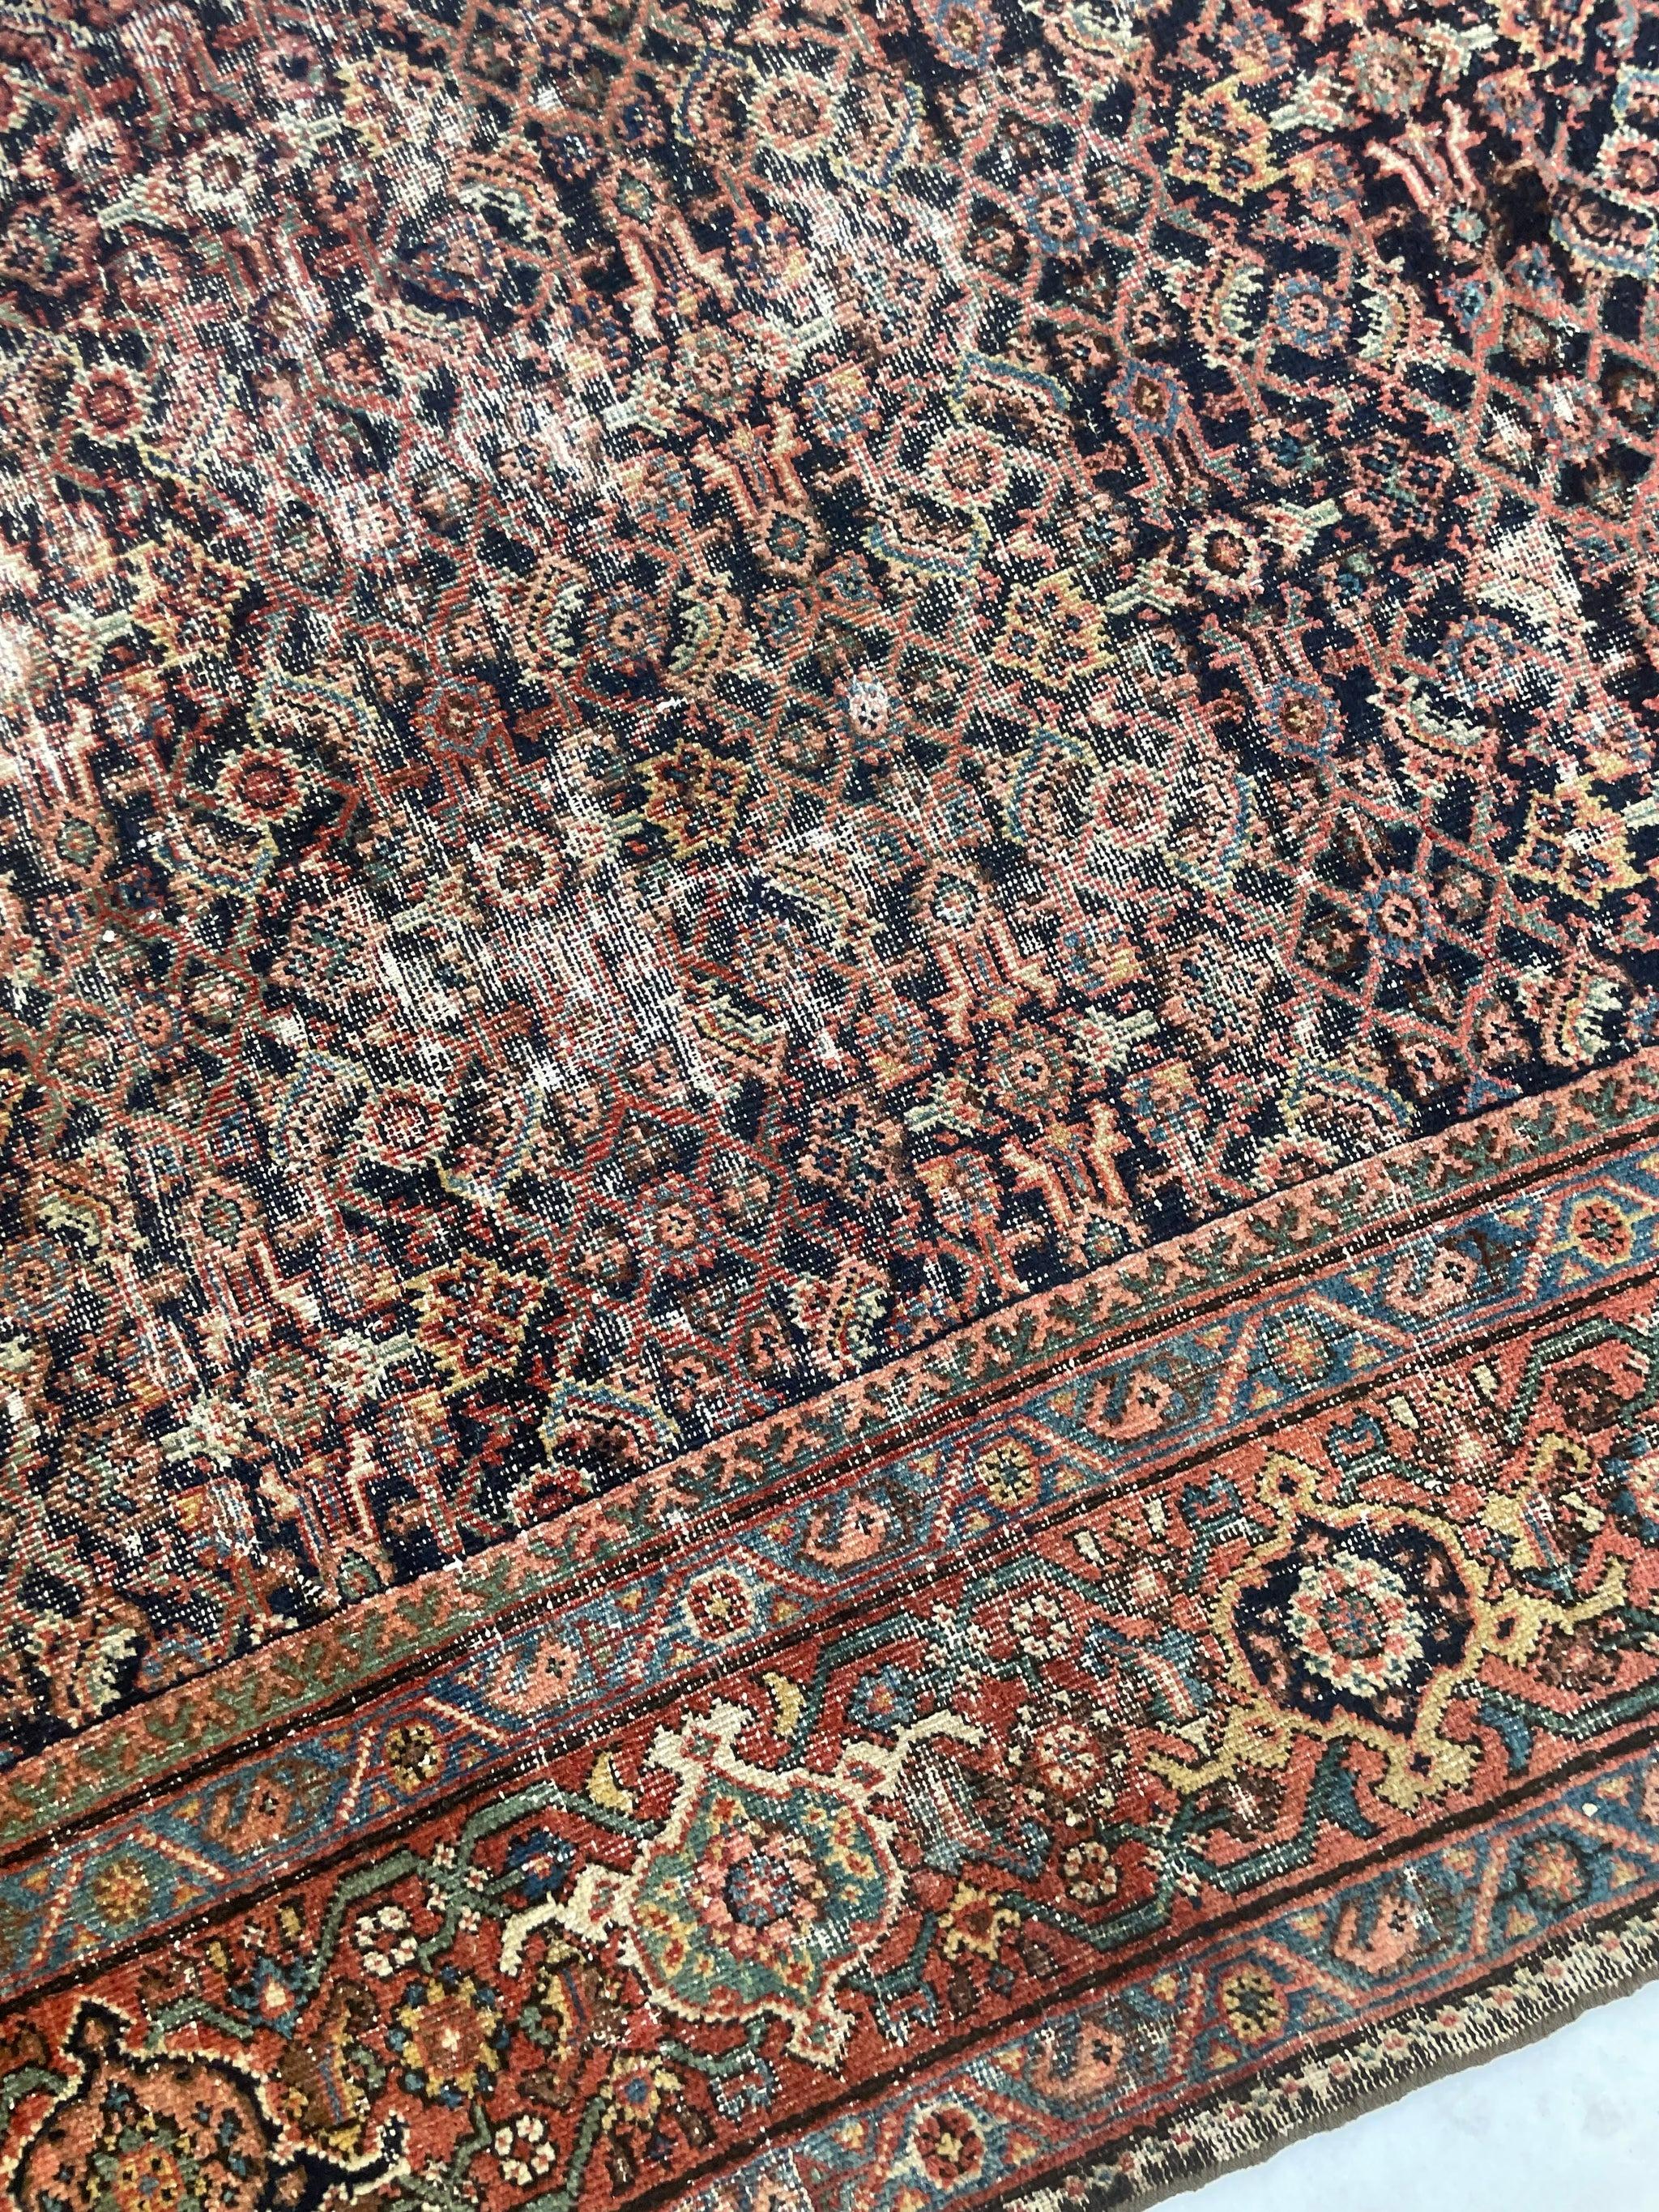 Antique Persian Carpet Rug in Deep Old-World Indigo, circa 1900-1915's For Sale 3